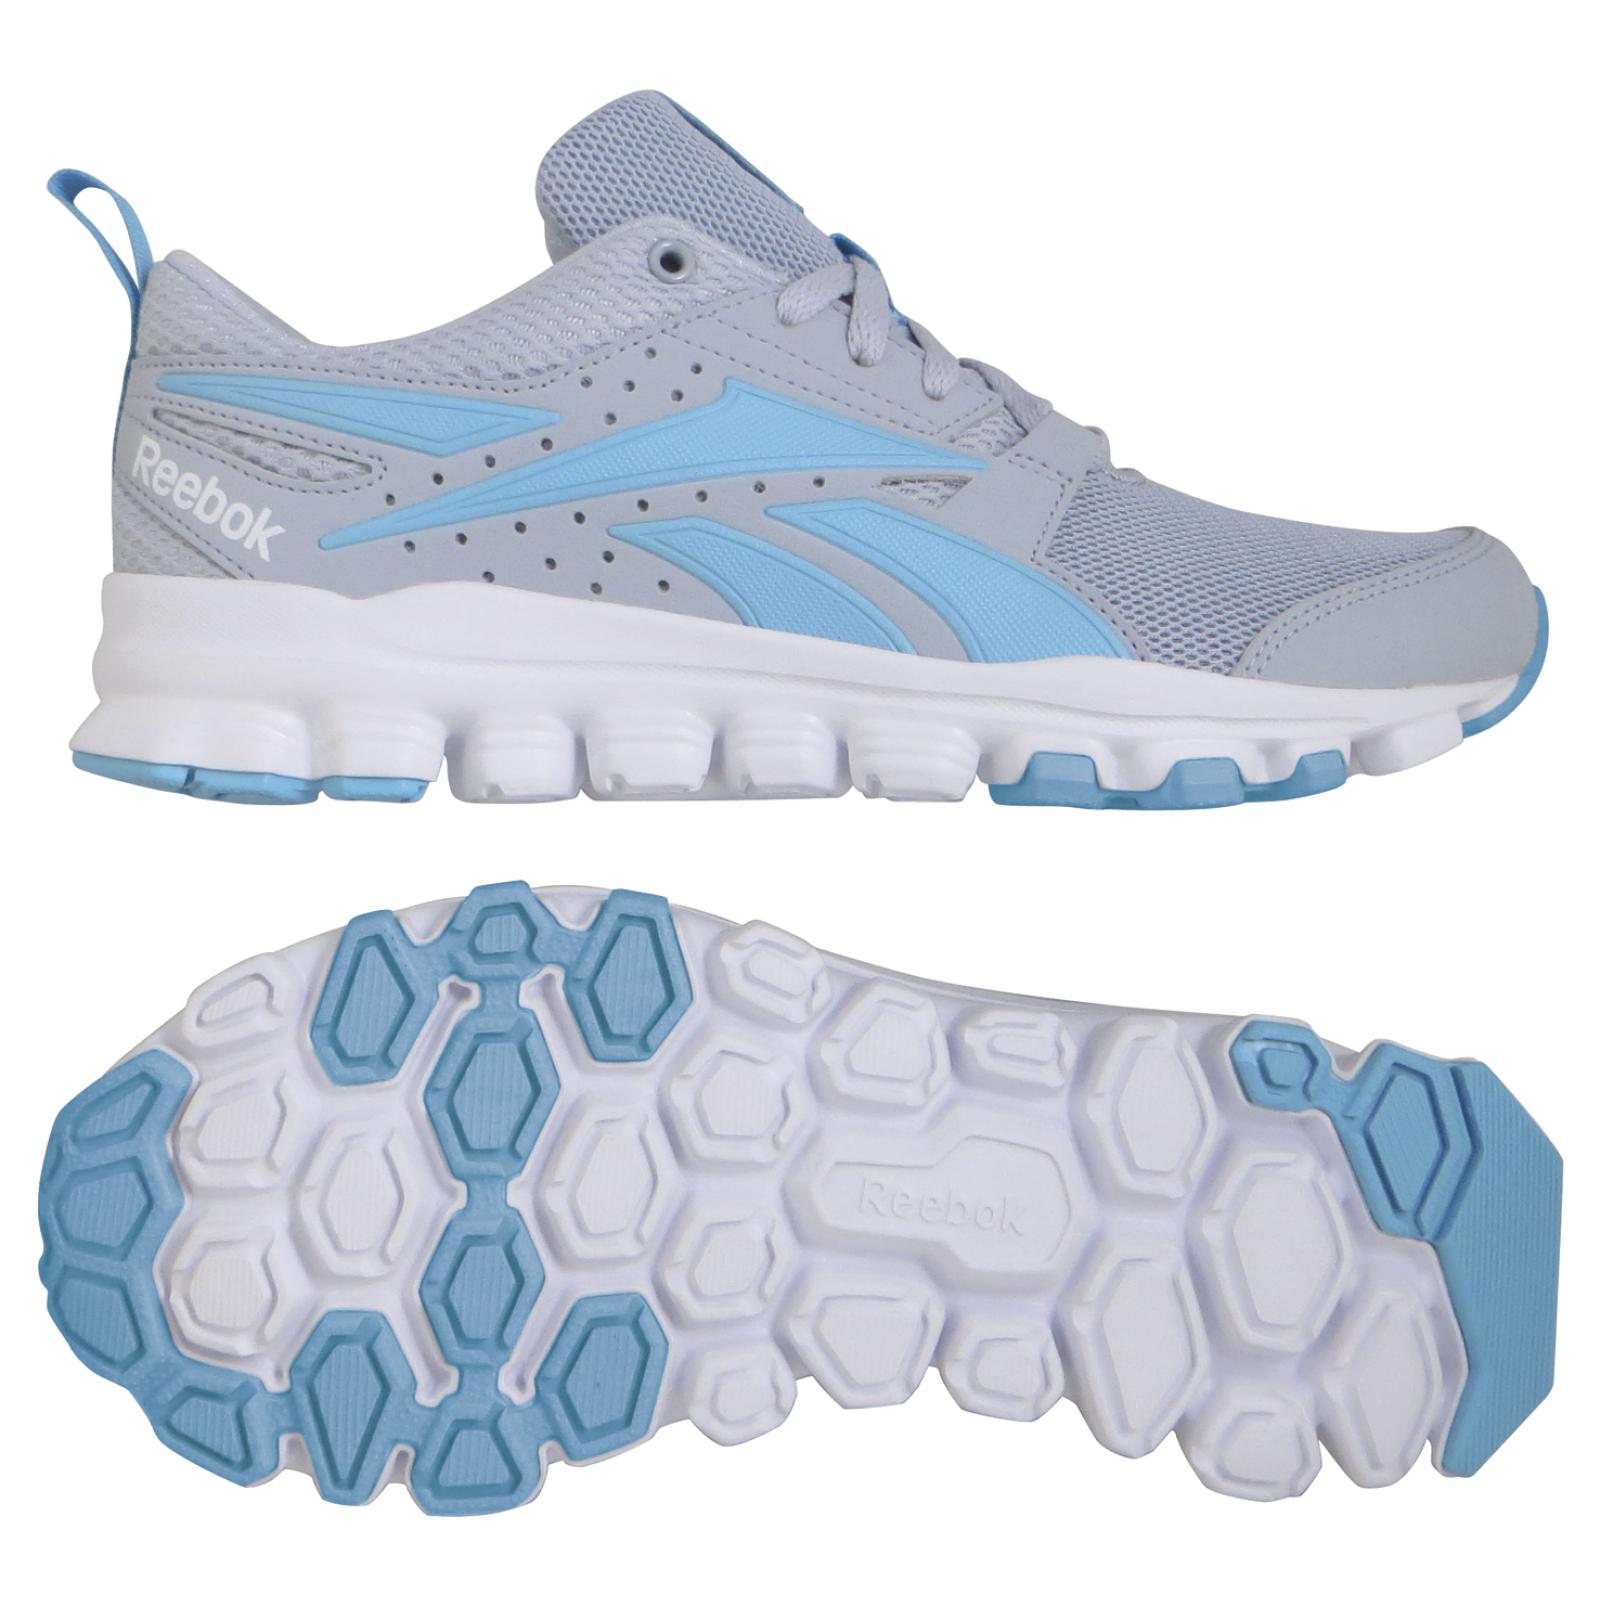 Reebok Women's Hexaffect Sport Gray/Light Blue Running Shoe